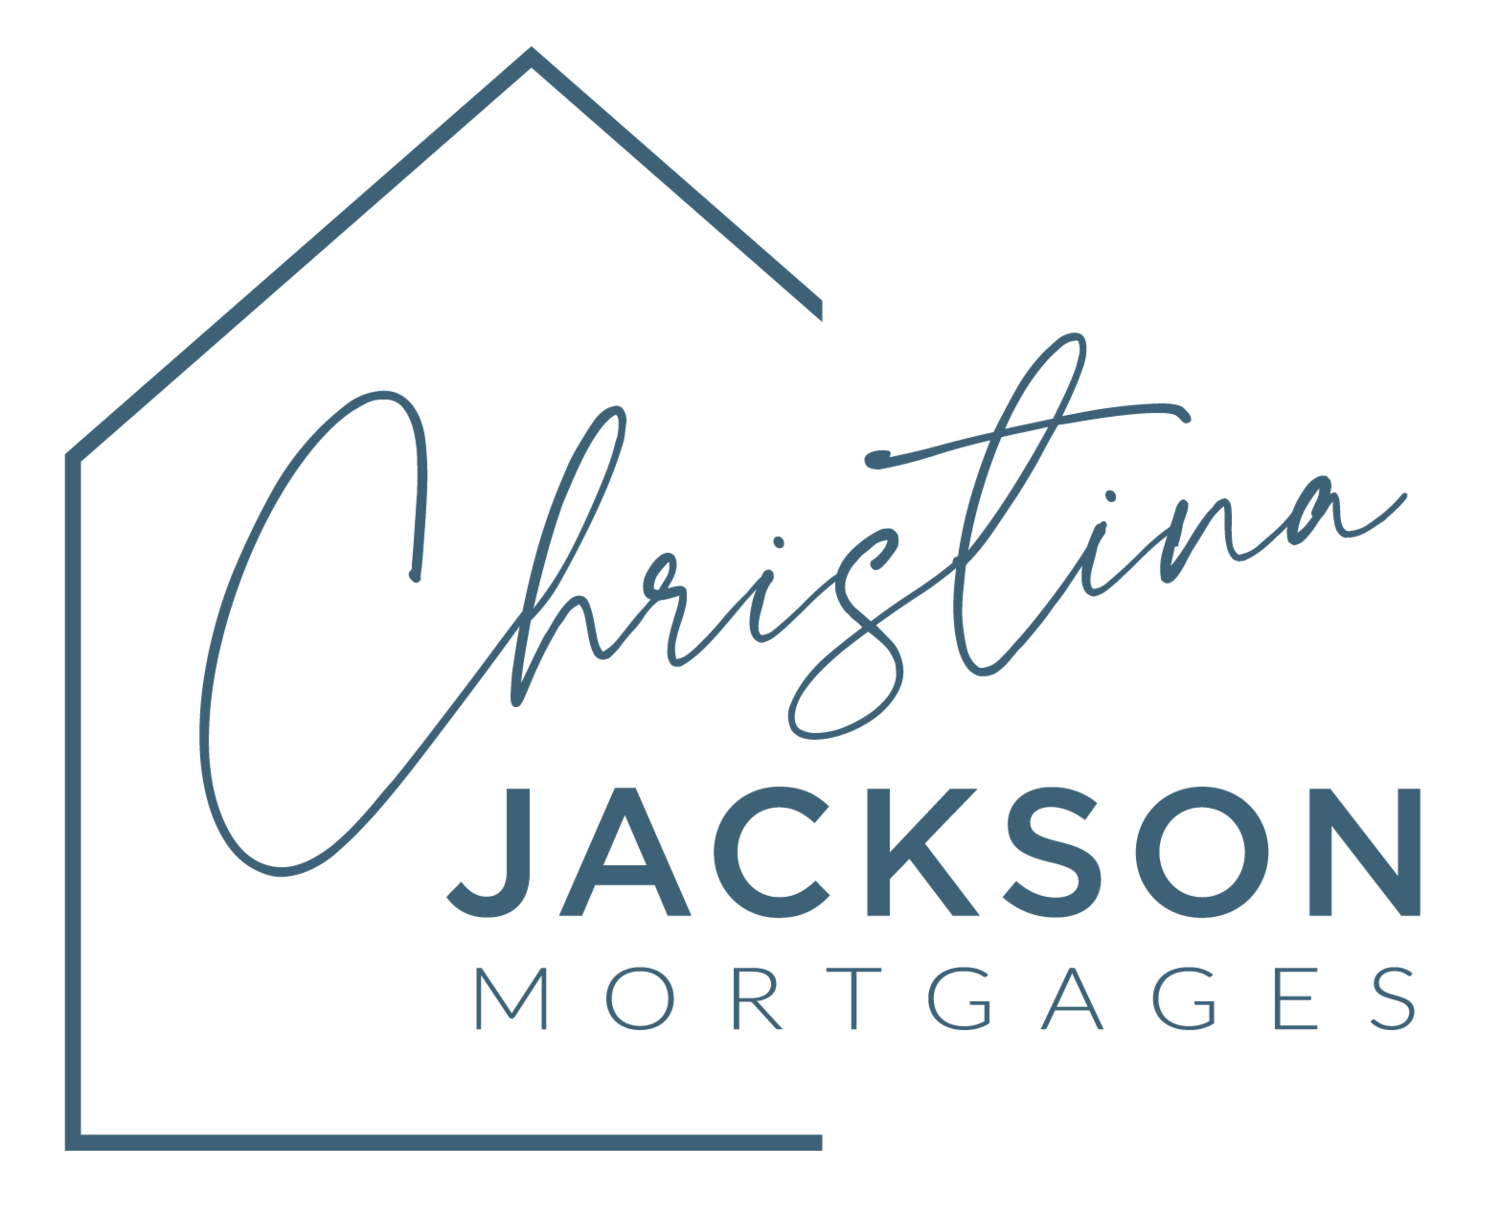 Christina Jackson Mortgages